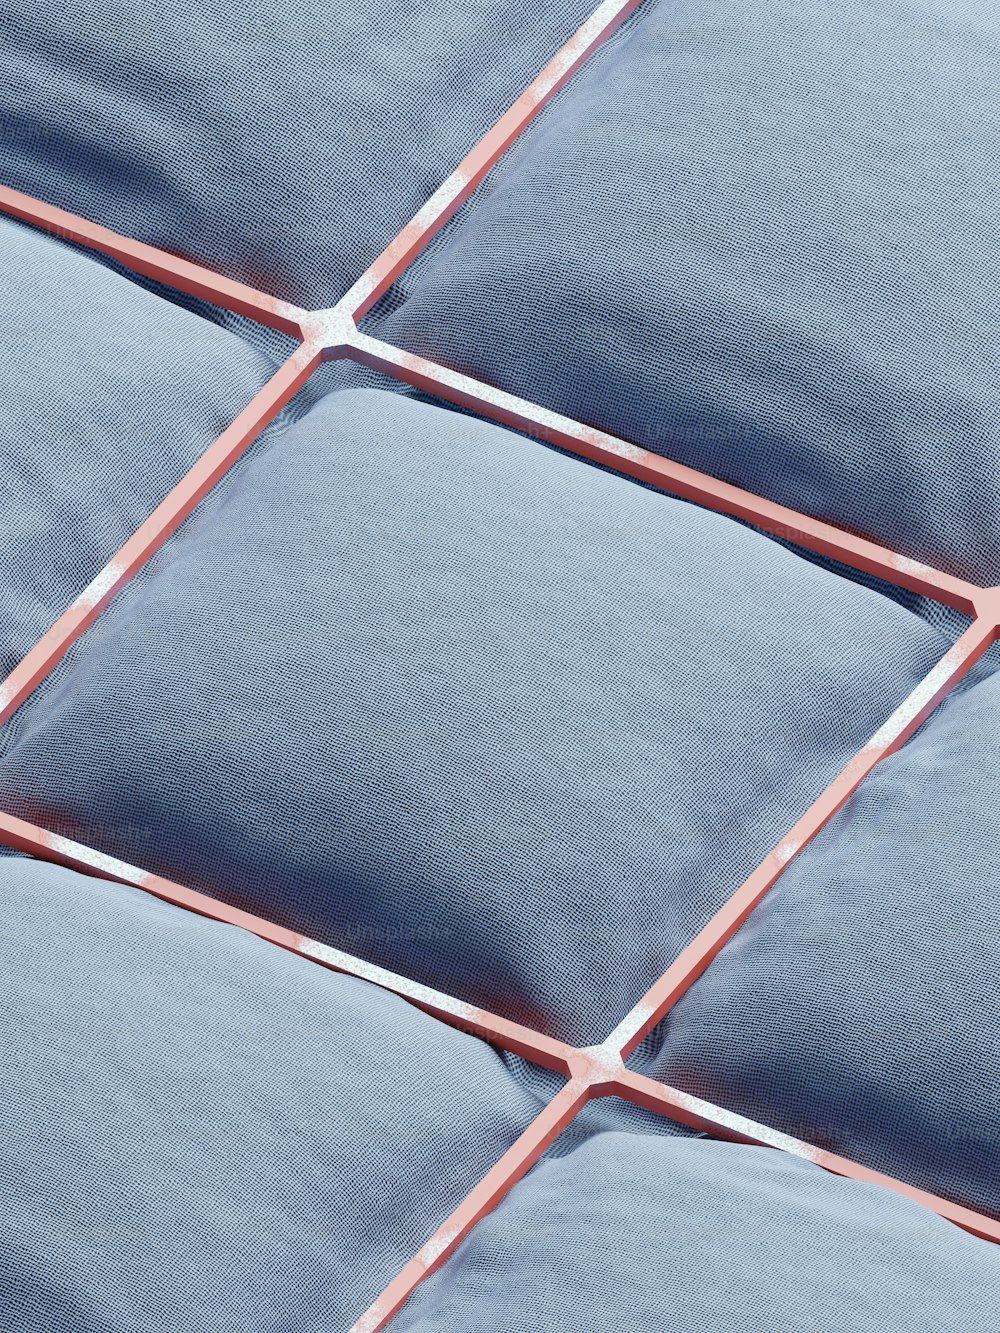 um close up de um padrão de azulejo azul e branco